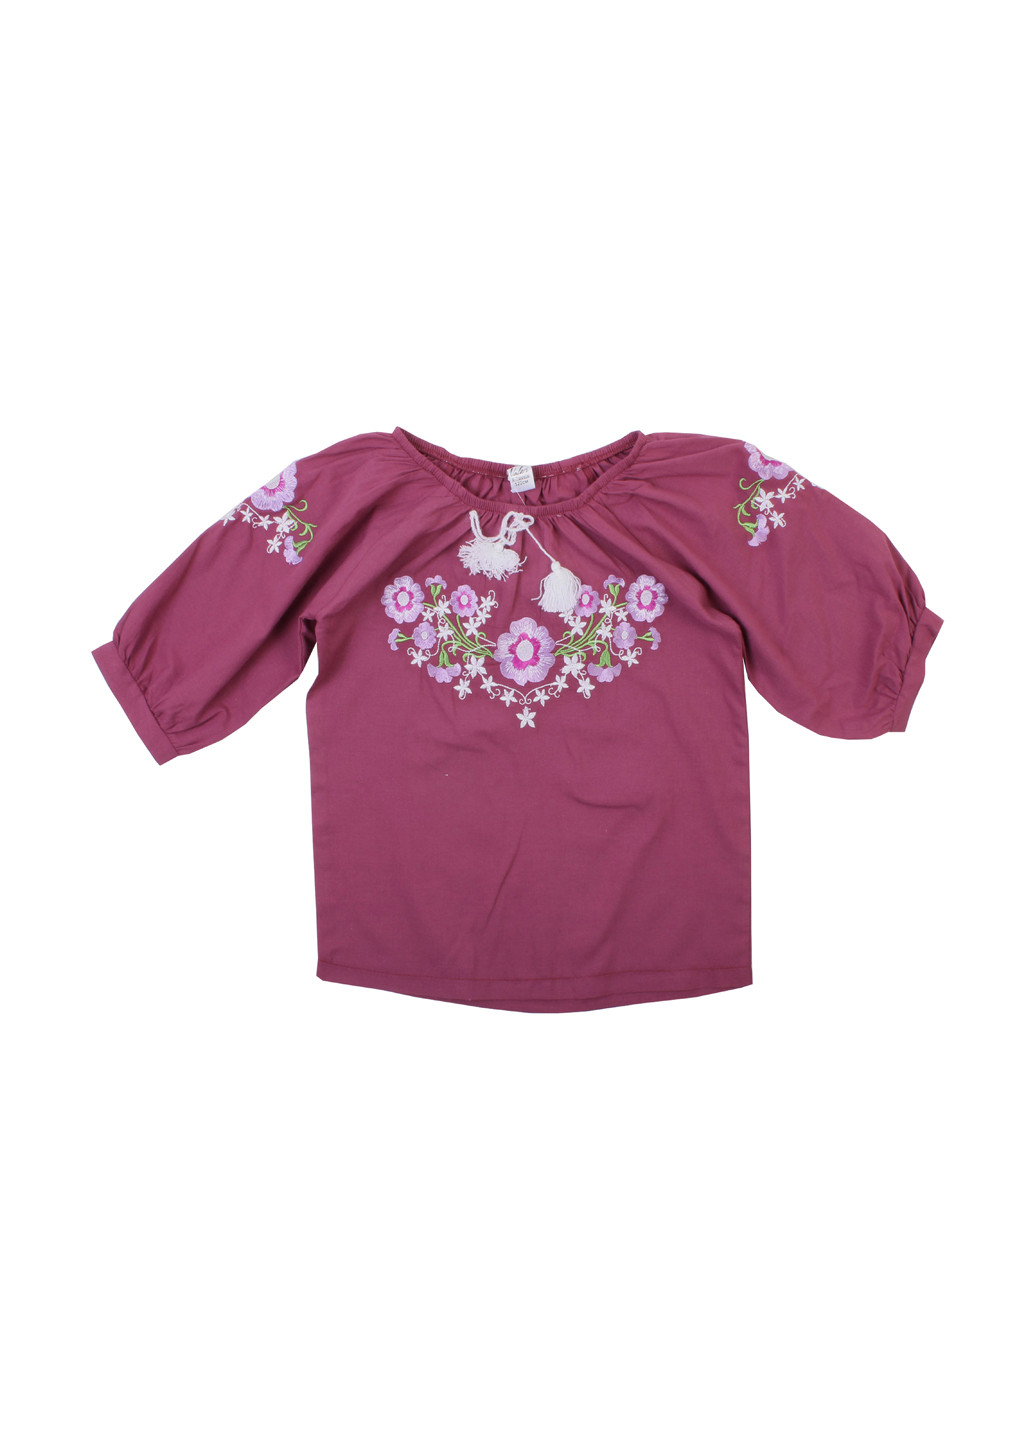 Бордовая цветочной расцветки блузка Валери-Текс демисезонная